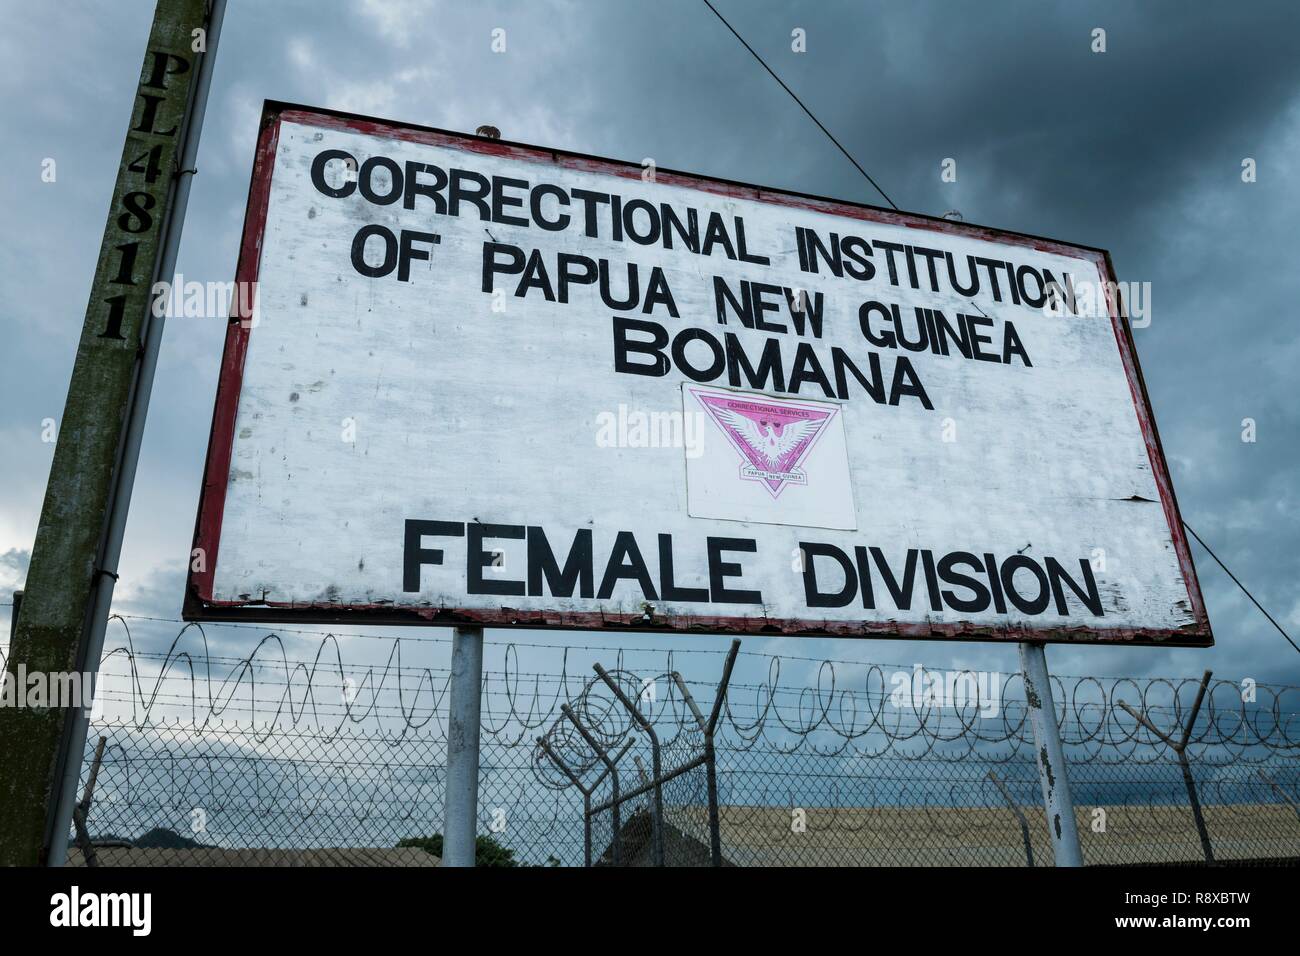 Papua Nueva Guinea, Golfo de Papua, distrito de la Capital Nacional, Port Moresby, Bomana Prisión, junta de la división femenina Foto de stock